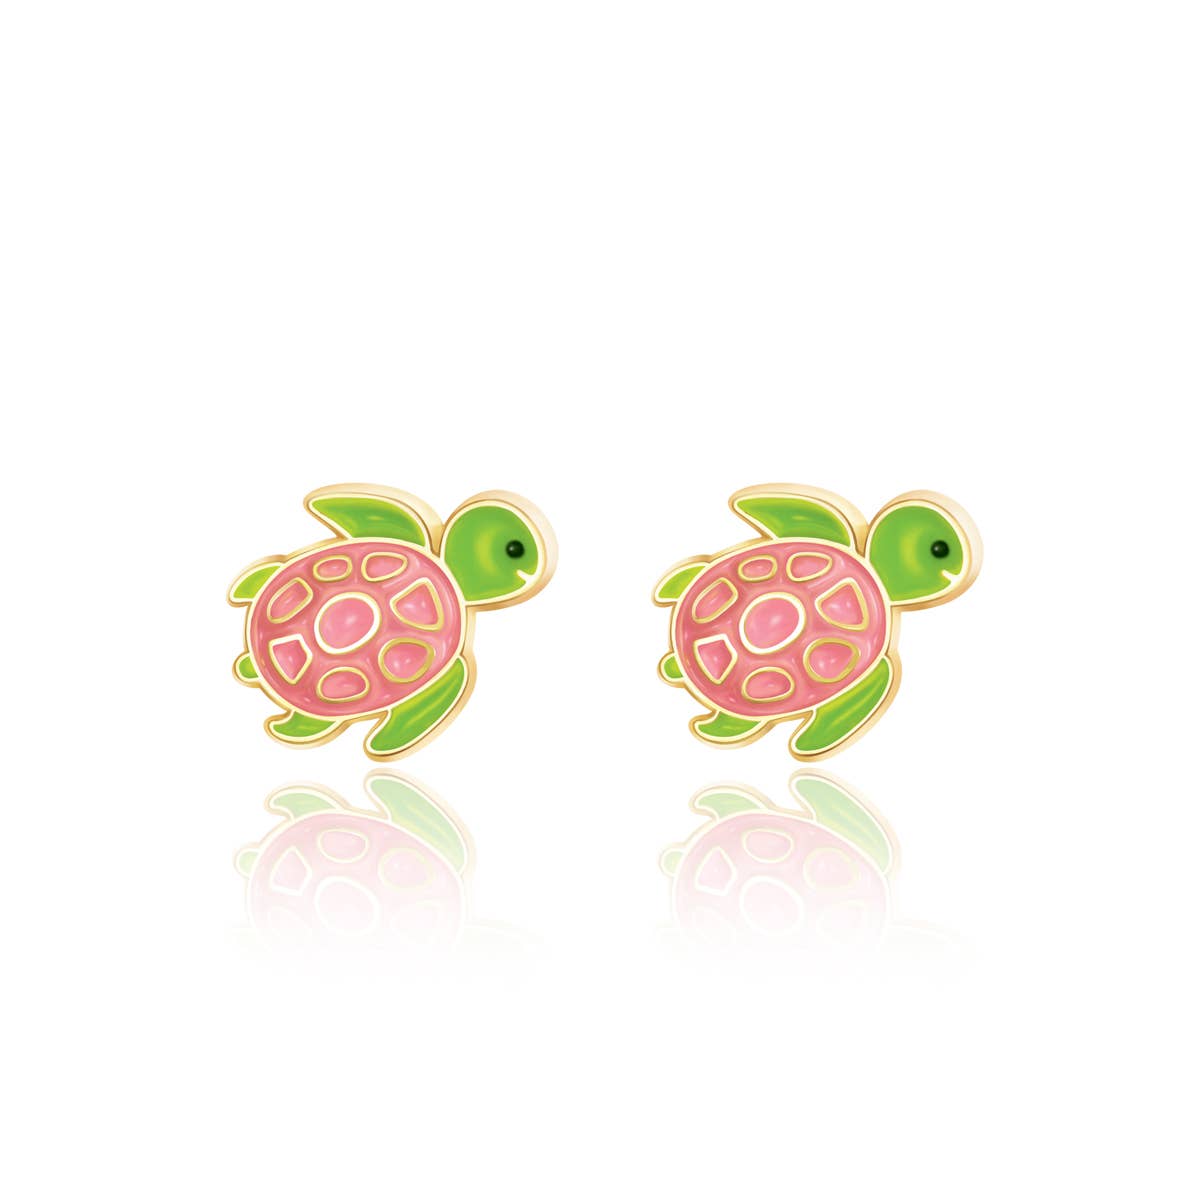 Turtle-y Awesome Cutie Stud Earrings